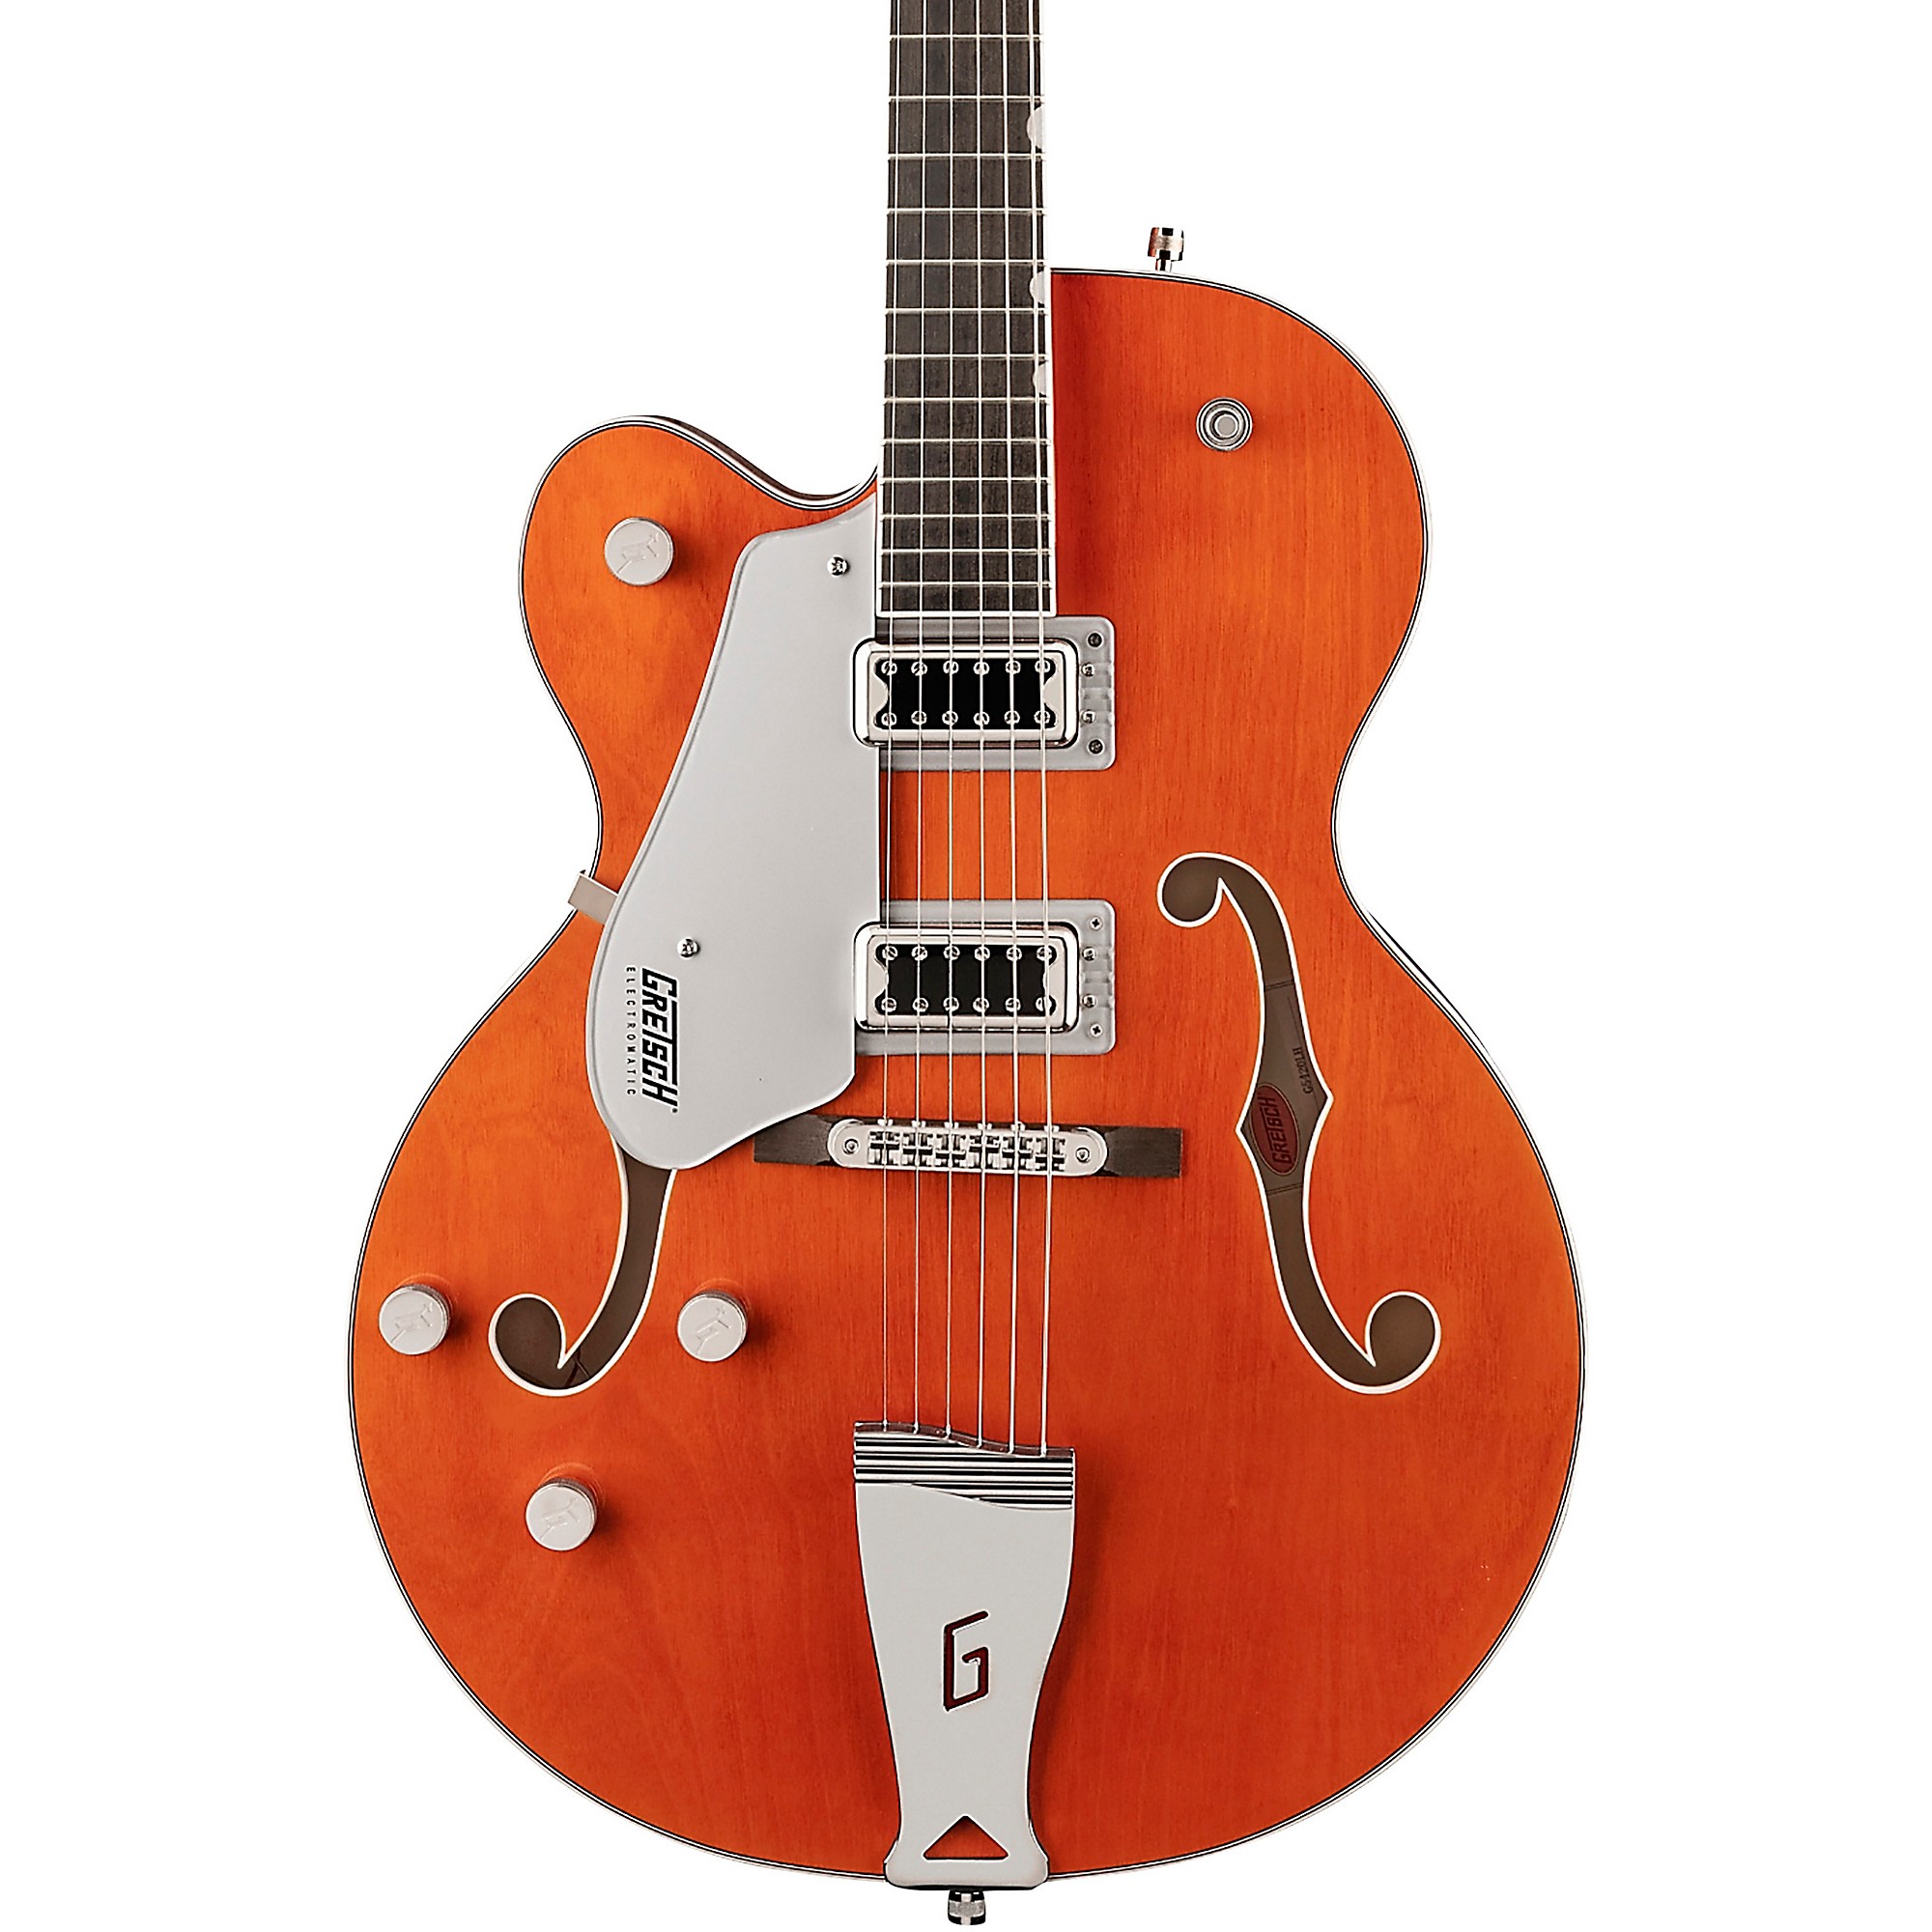 Gretsch Guitars G5420LH Электроматическая классическая полая электрогитара с одинарным вырезом для левой руки, оранжевое пятно